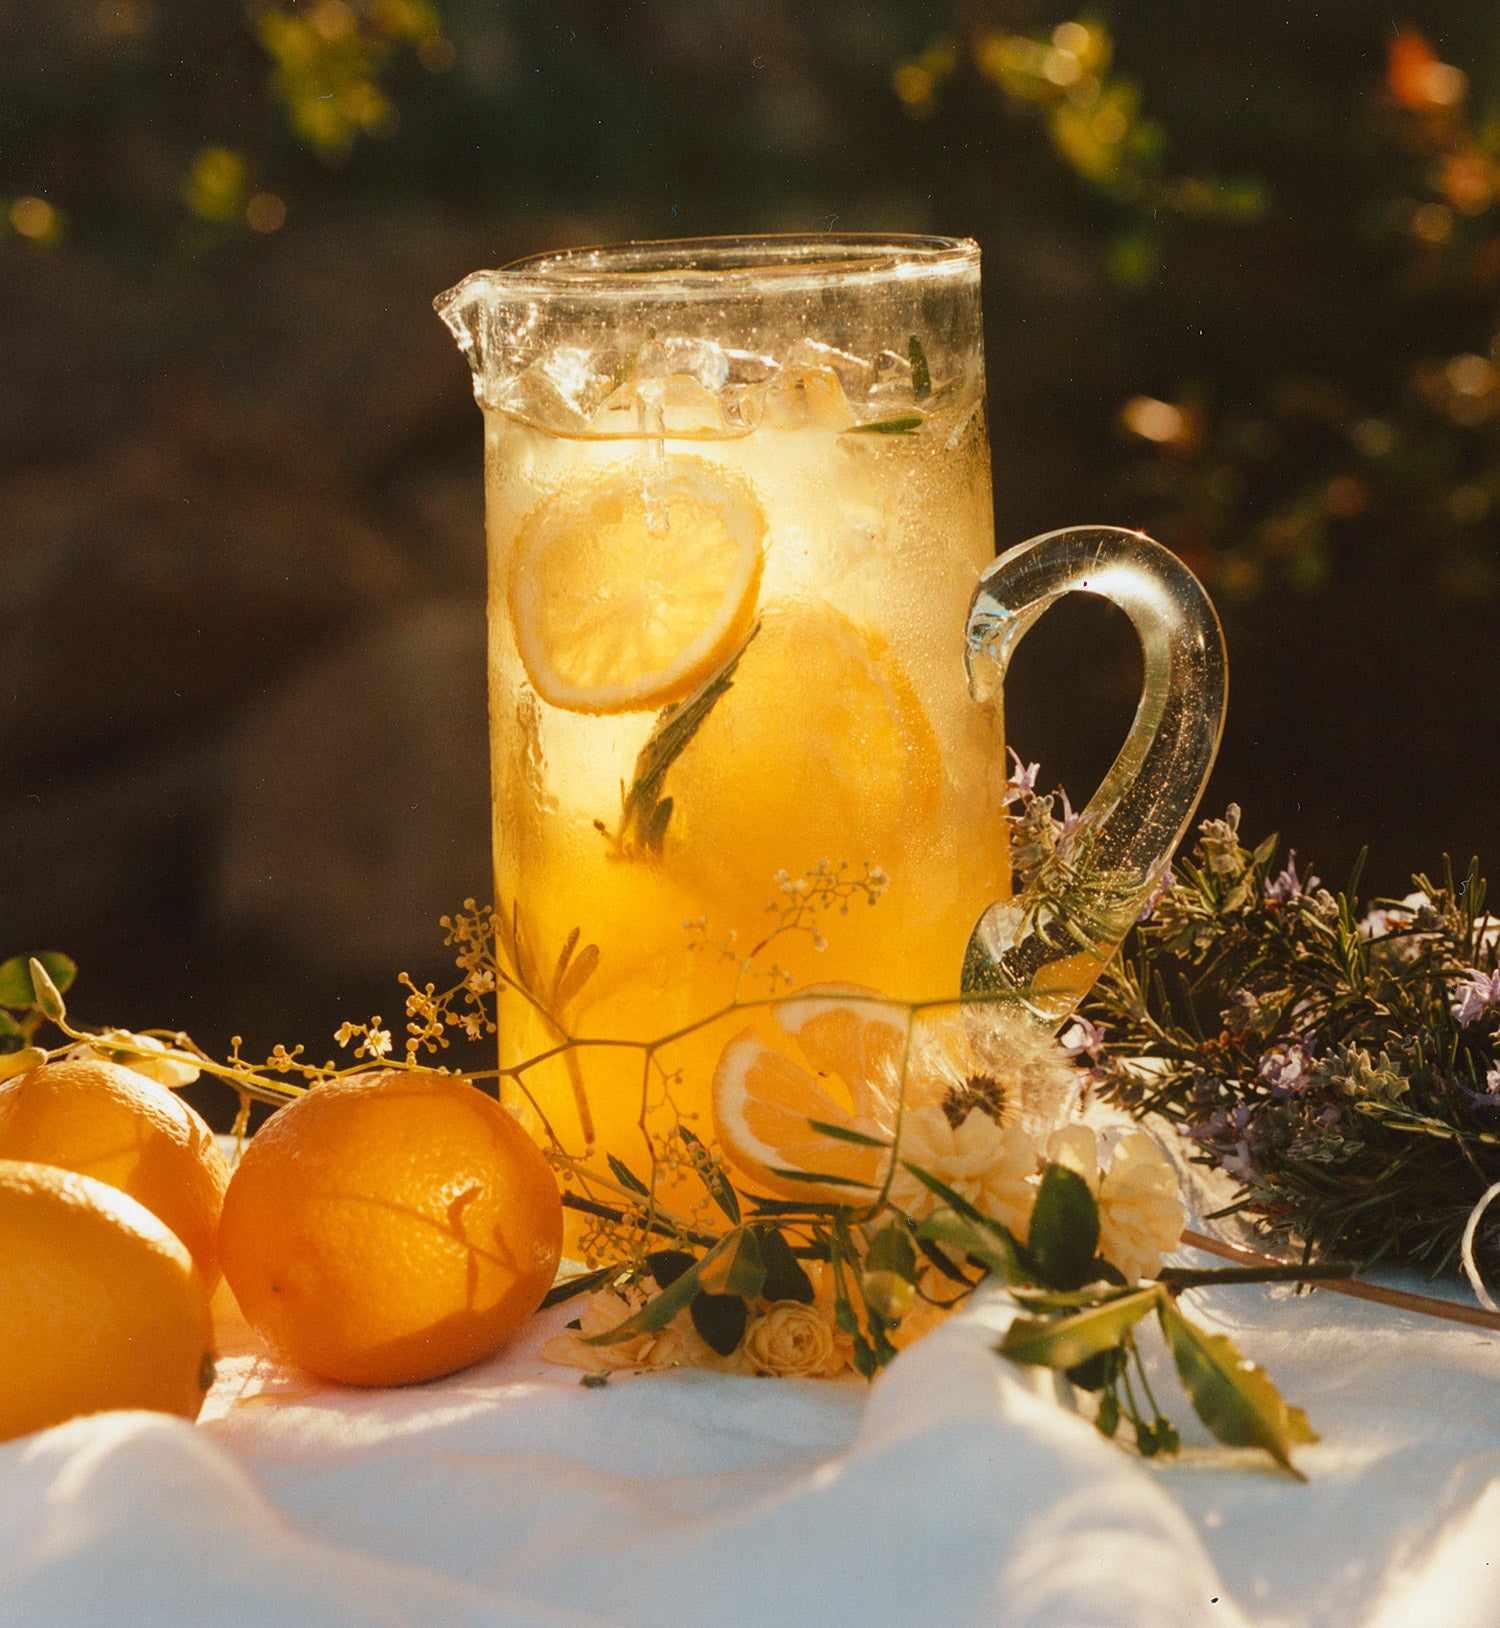 Cara Cara, Myer Lemon & Rosemary Lemonade – Marmalade Grove